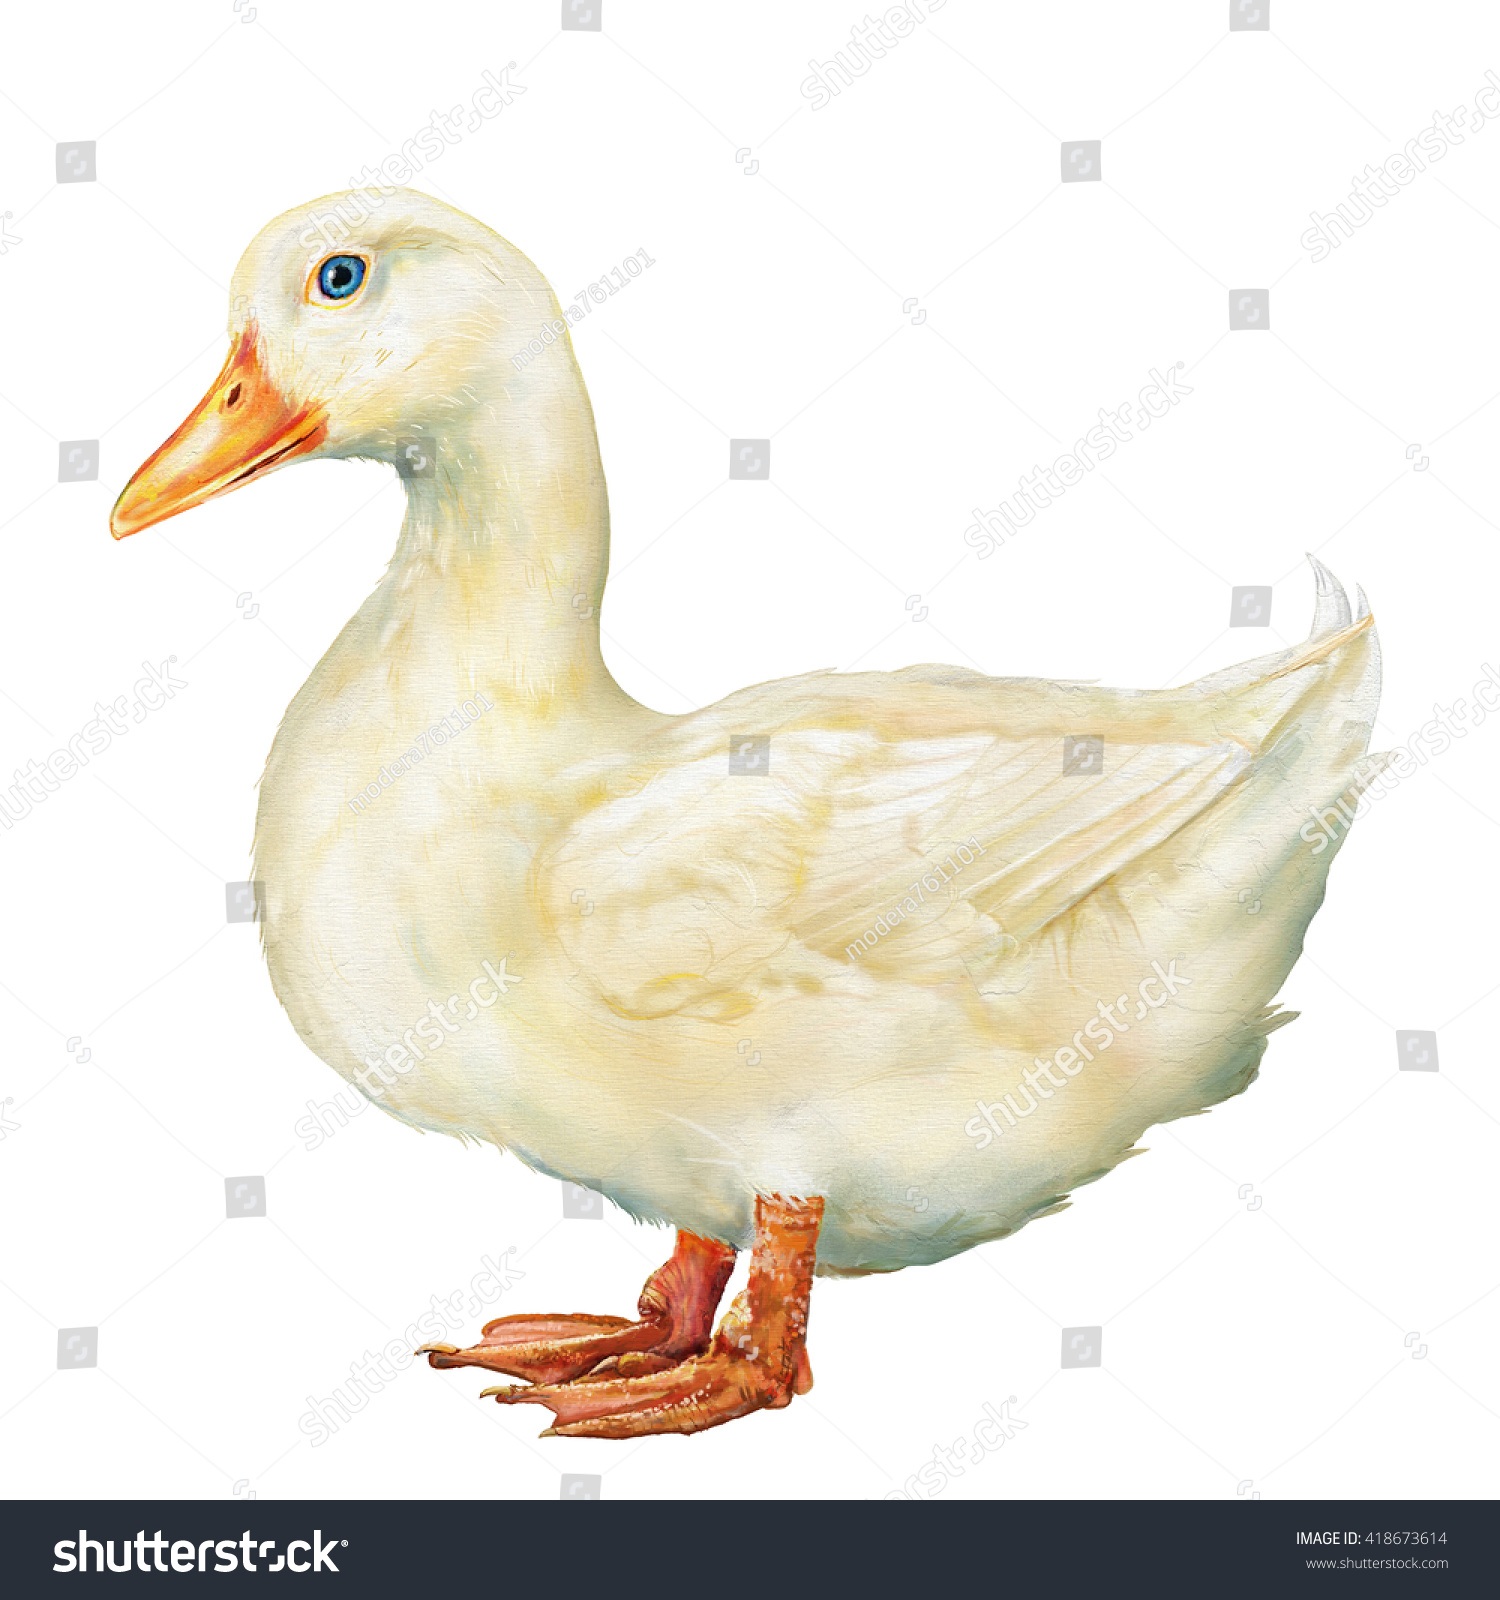 White Duck Digital Painting White Duck Stock Illustration 418673614 ...